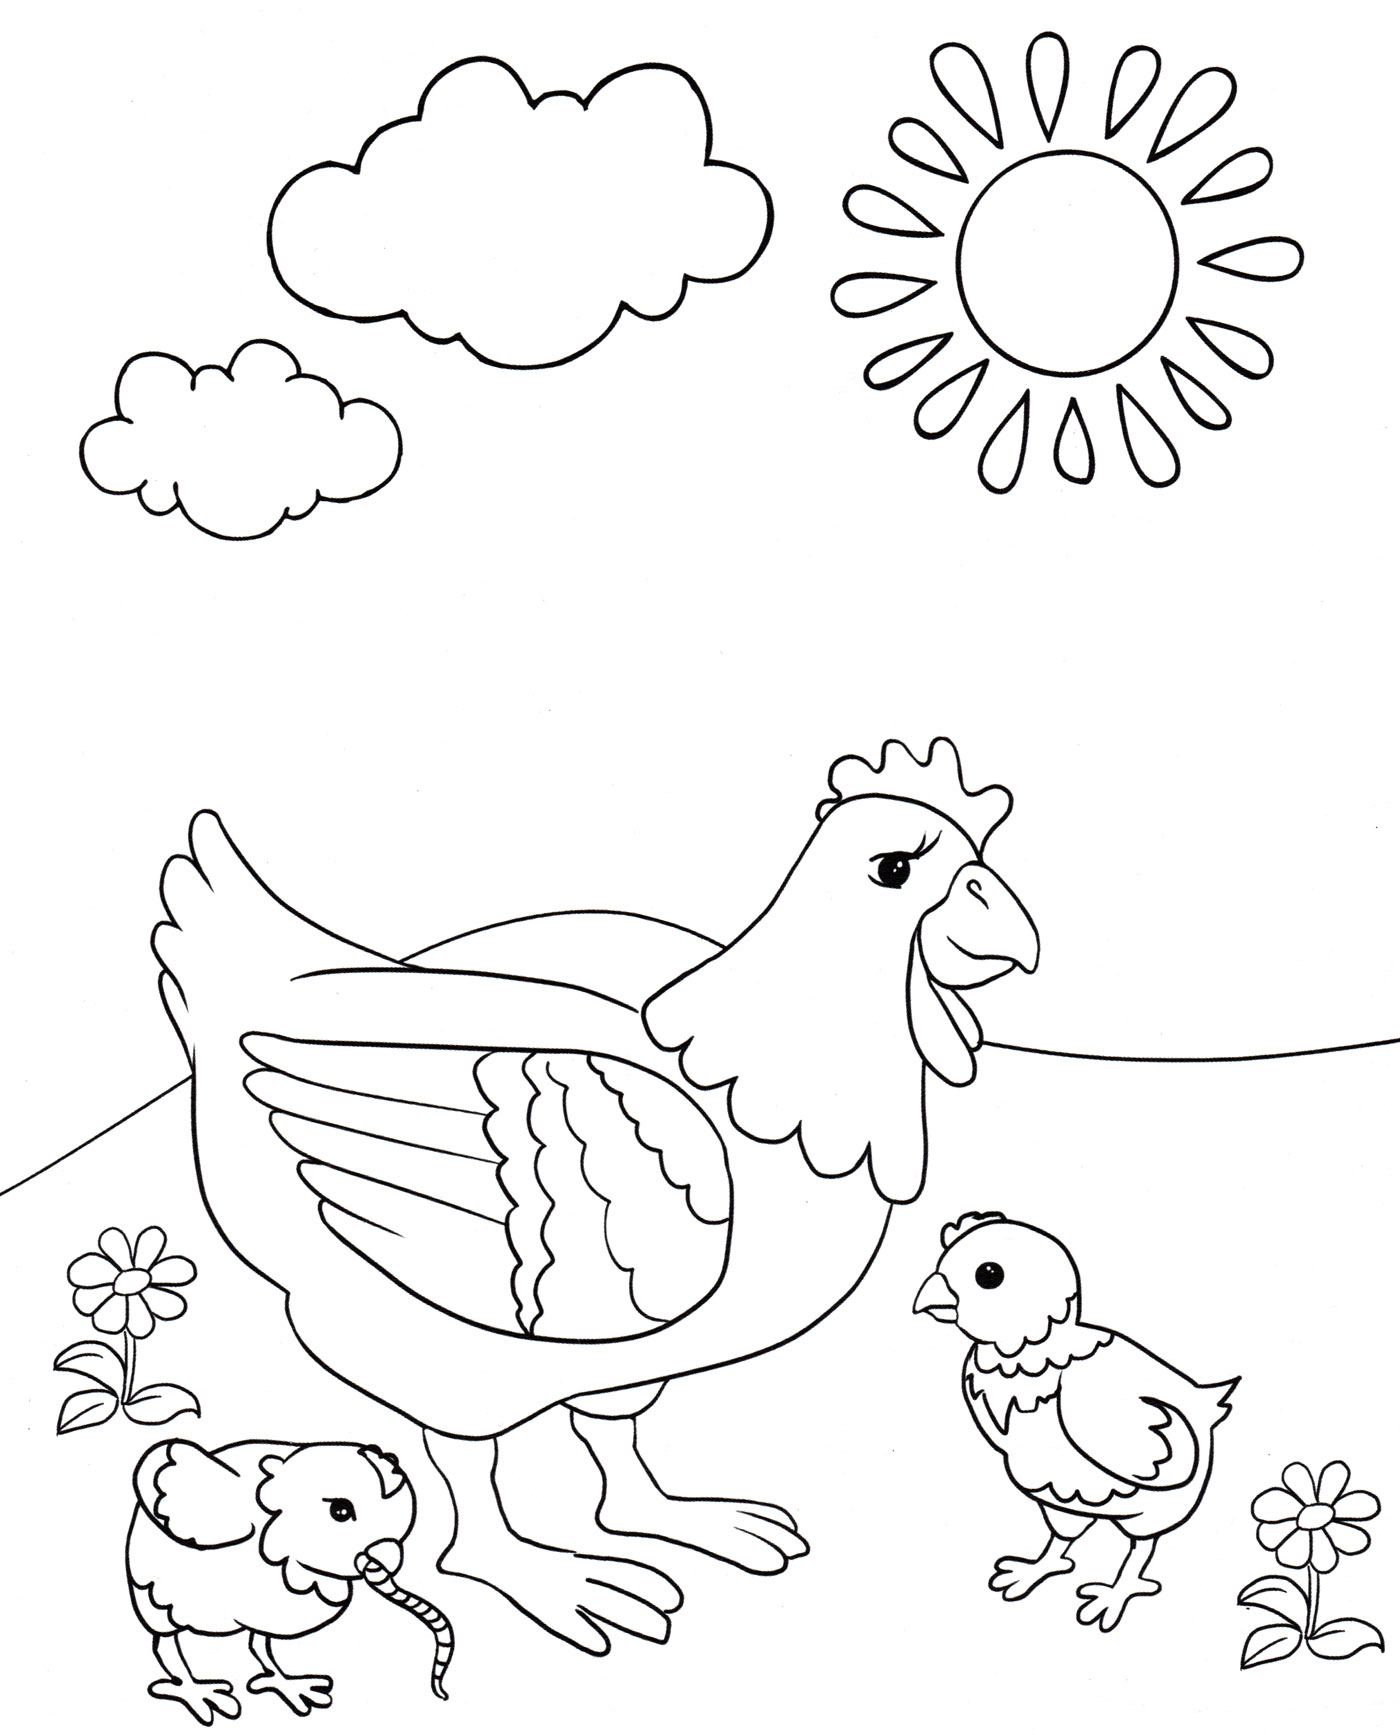 Раскраска курица и цыплята домашняя птица - скачать и распечатать в формате А4